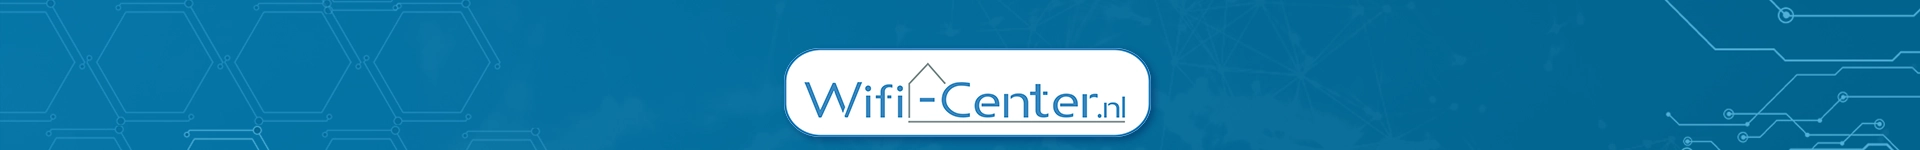 wifi-center.nls achtergrond